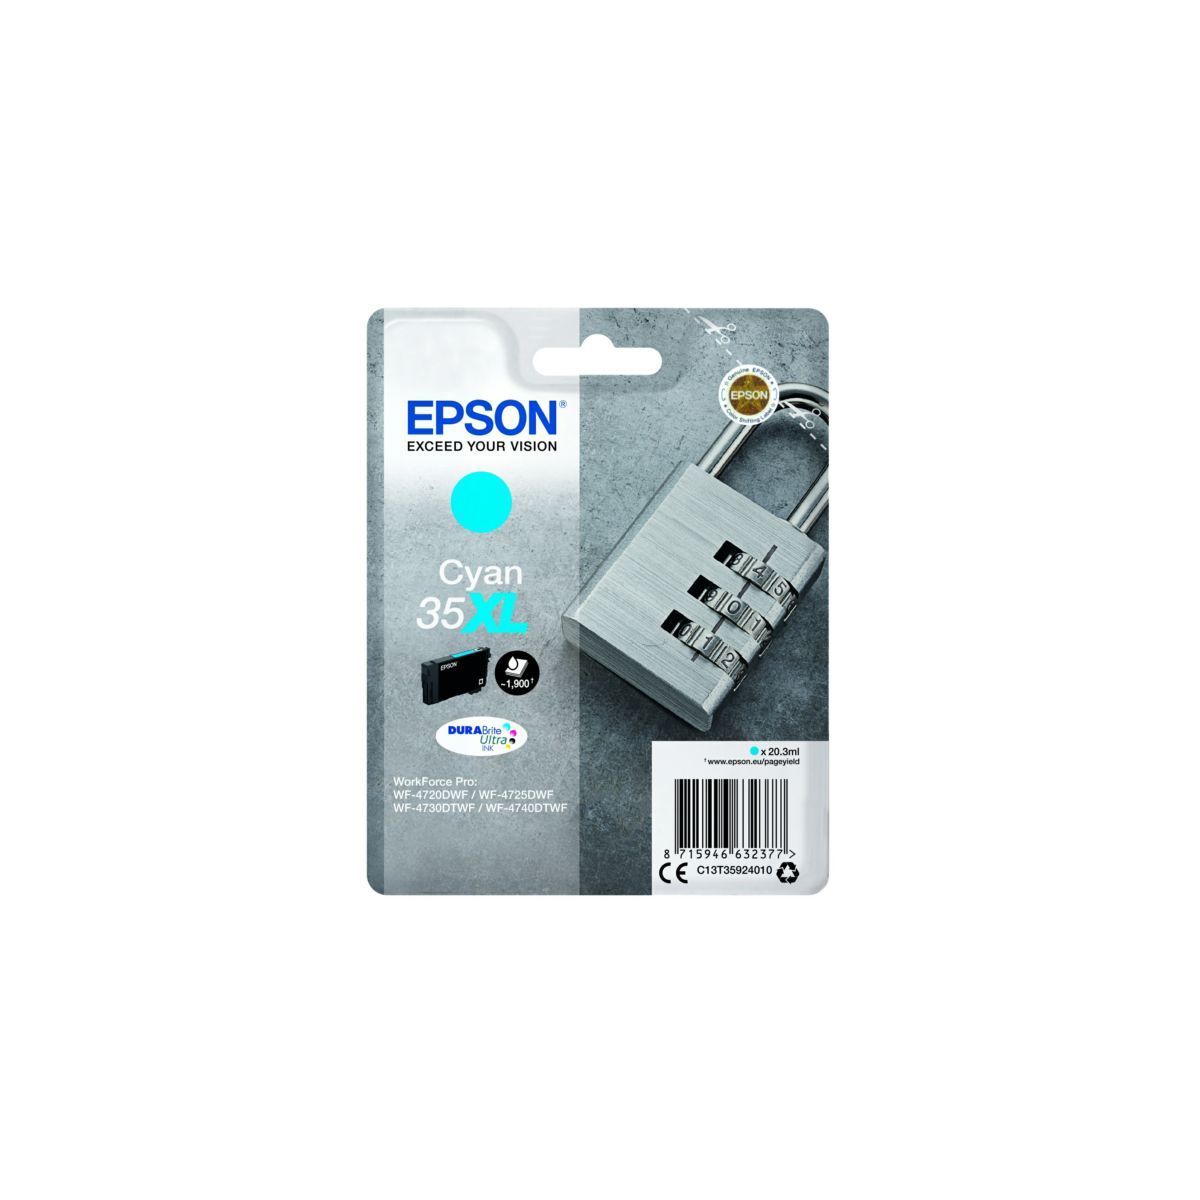 Epson 35XL - 20.3 ml - XL - cyan - originale - emballage coque avec alarme radioelectrique/ acoustique - cartouche d'encre - pour WorkForce Pro WF-4720, WF-4720DWF, WF-4725DWF, WF-4730, WF-4740, WF-4740DTWF